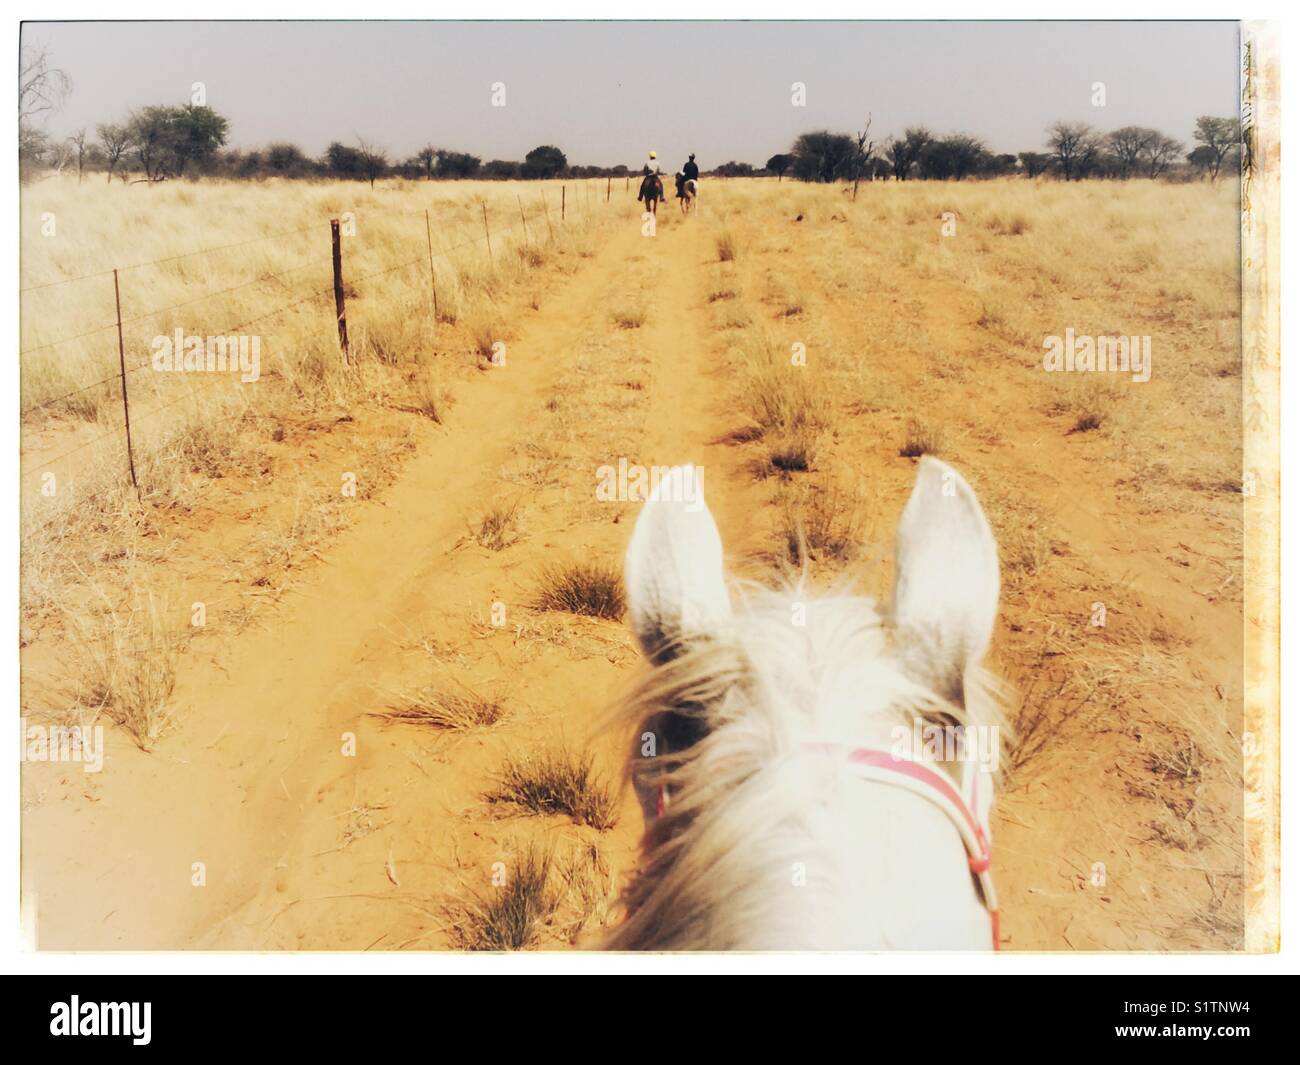 Una vista desde el corredor durante la equitación en la región de Kalahari de Sudáfrica. Foto de stock